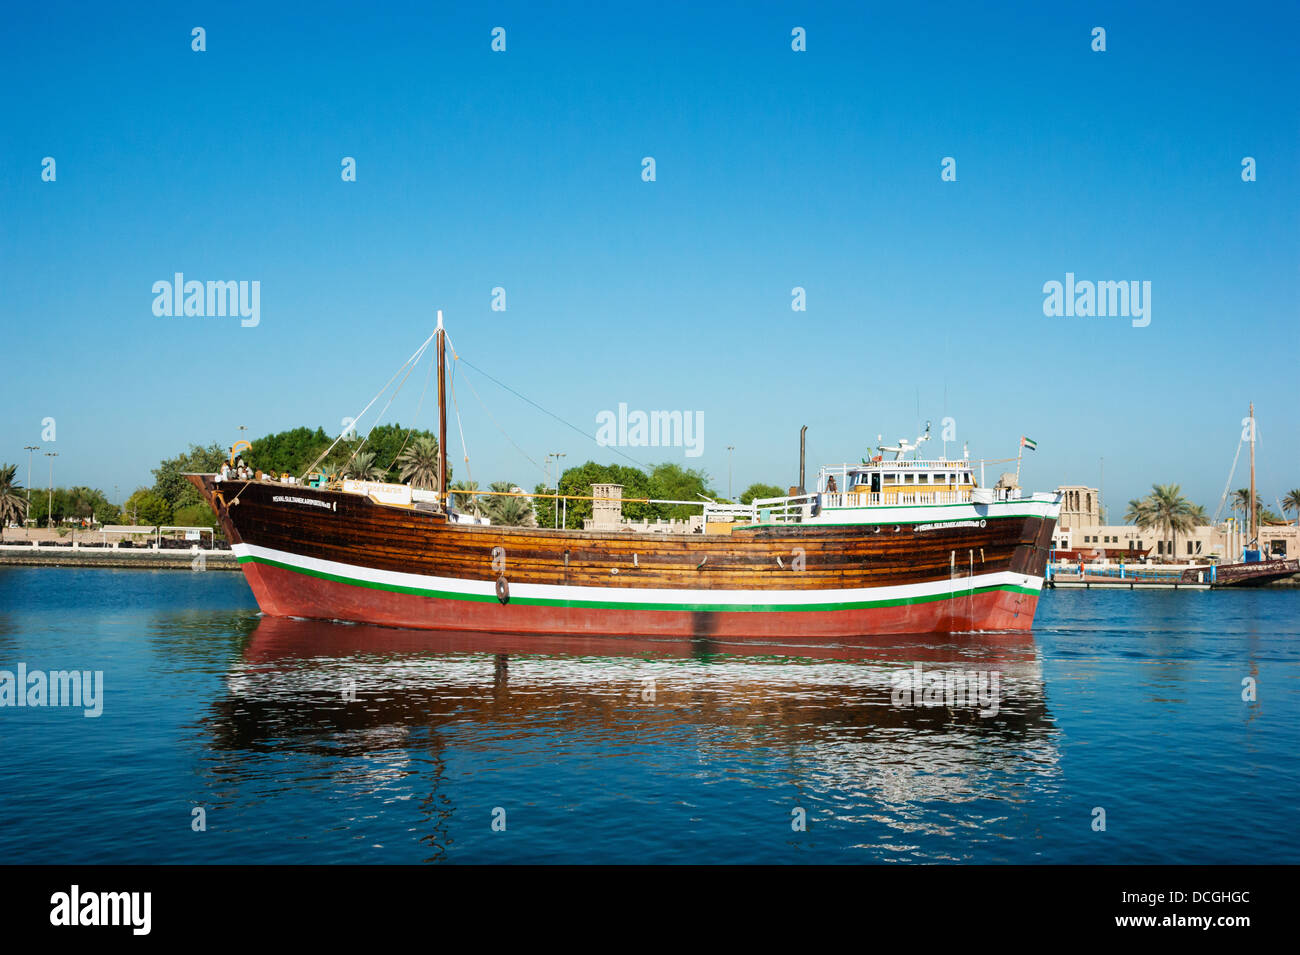 Vecchio legno commercio arabo nave a Novembre 14, 2012 in Dubai, EAU. La tecnologia di costruzione navale è immutata dal XVIII secolo. Foto Stock